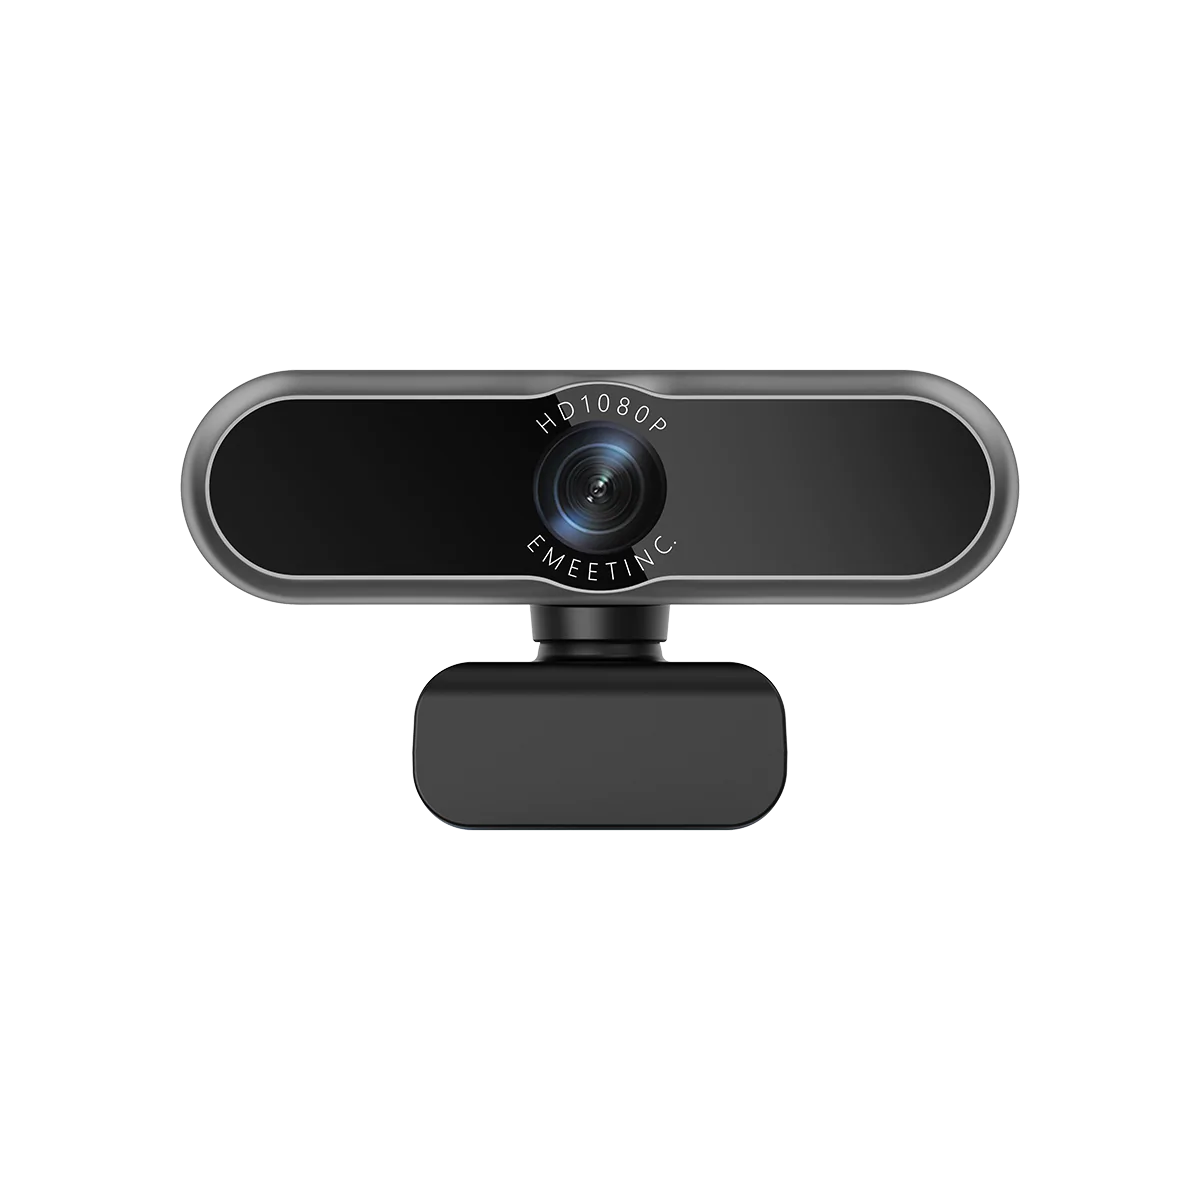 Webcam sans fil 1080P avec capteur Sony, EMEET Streamcam One, multi-caméras  avec micros pour /Twitch/Facebook